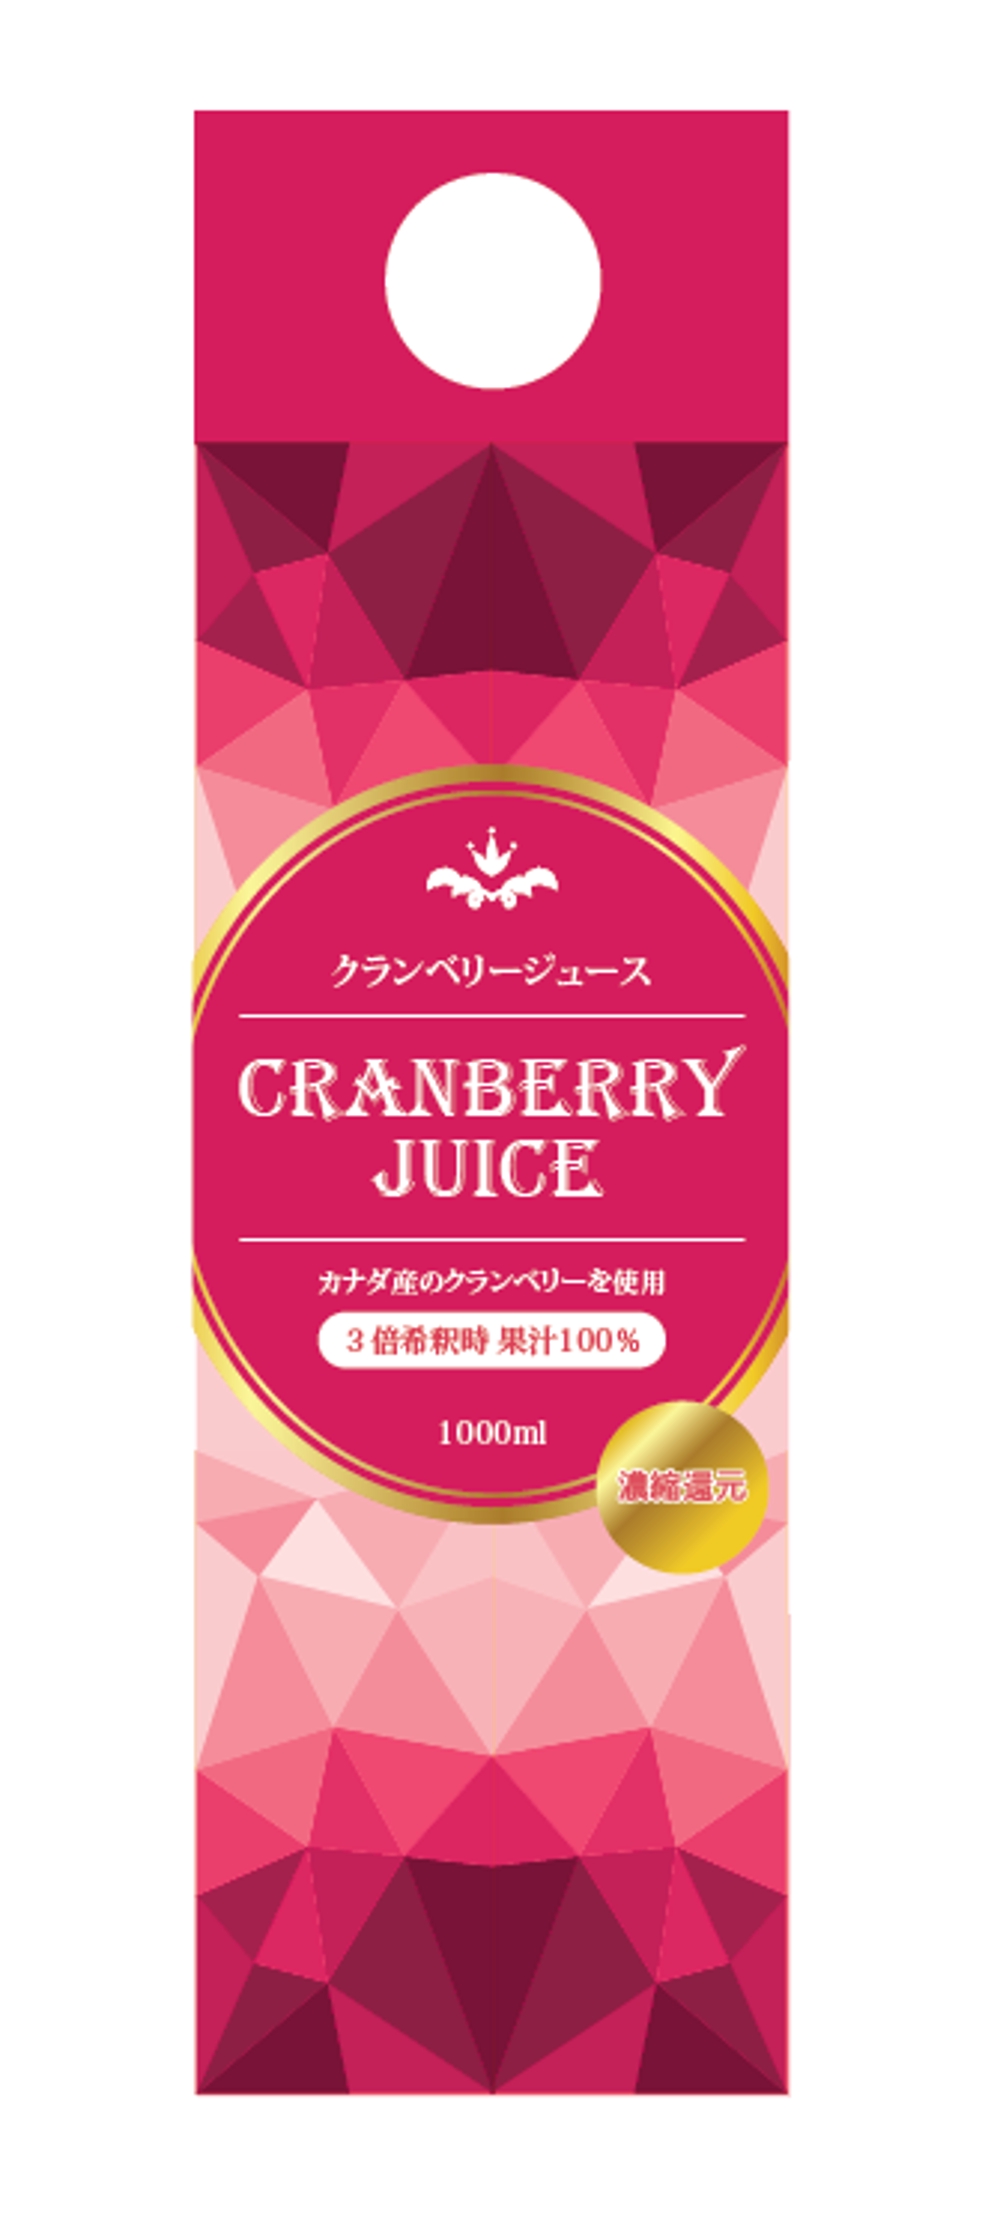 cranberry-juice-1.PNG